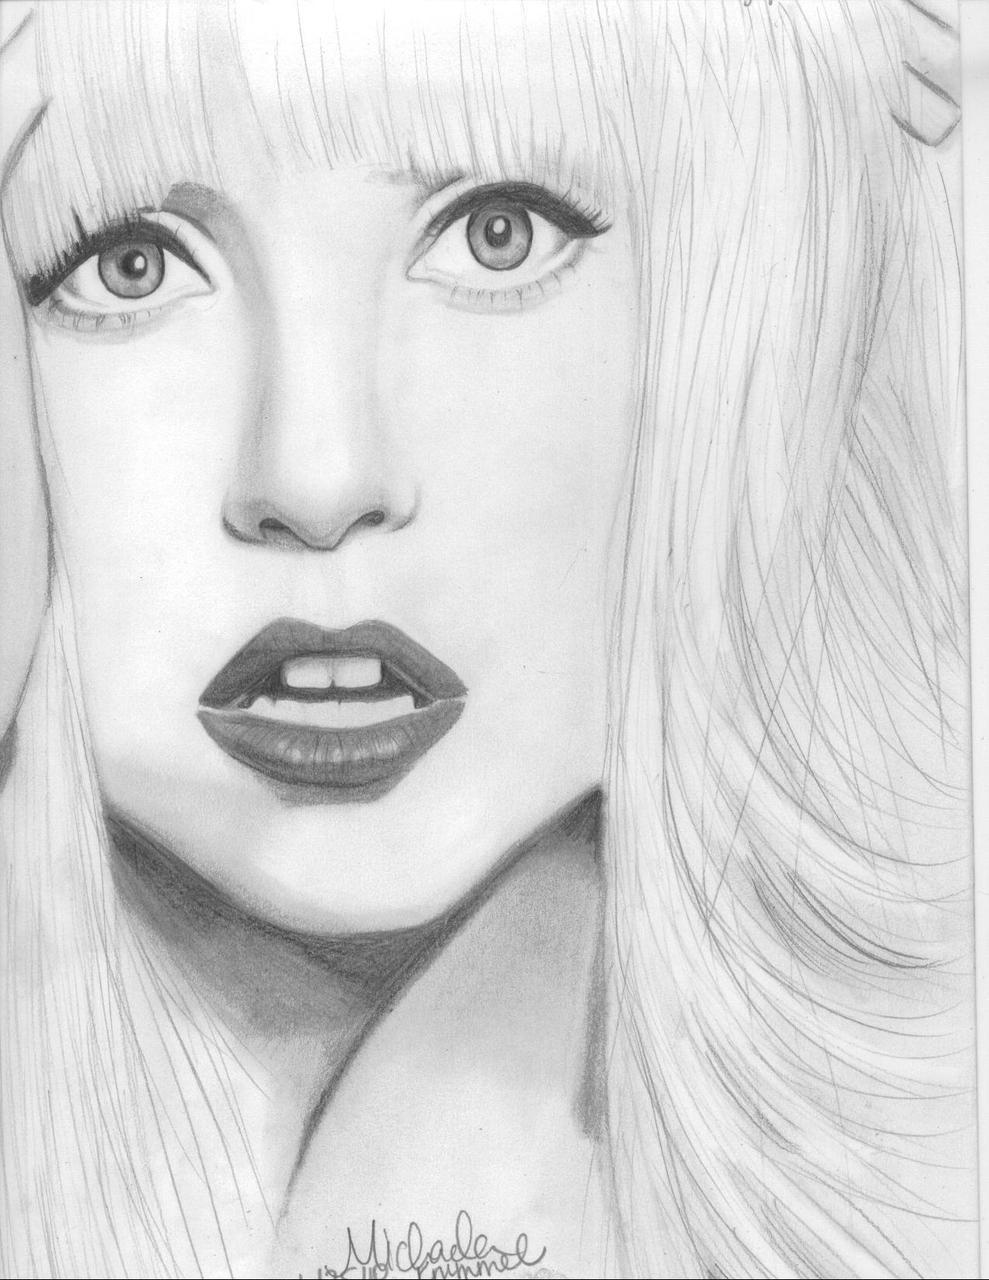 Lady Gaga, by Michaela Krummel. &lt;a href=&ldquo;http://www.mglynnk.tumblr.com&rdquo;&gt;mglynnk&lt;/a&gt;.